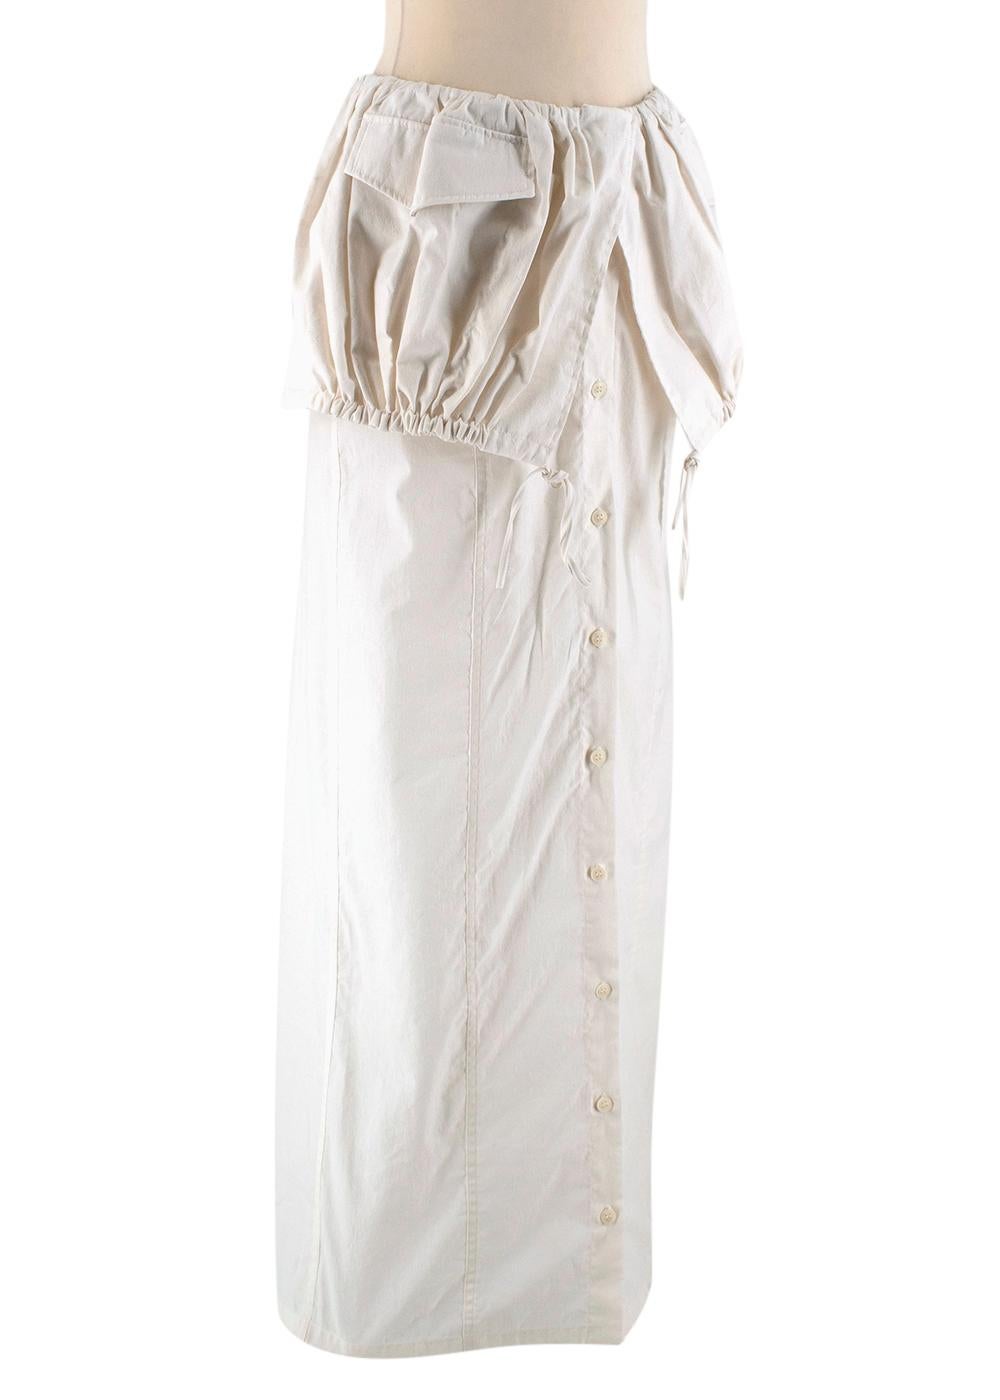 Jacquemus White La Jupe Cueillette Cotton Maxi Skirt - Size US 4